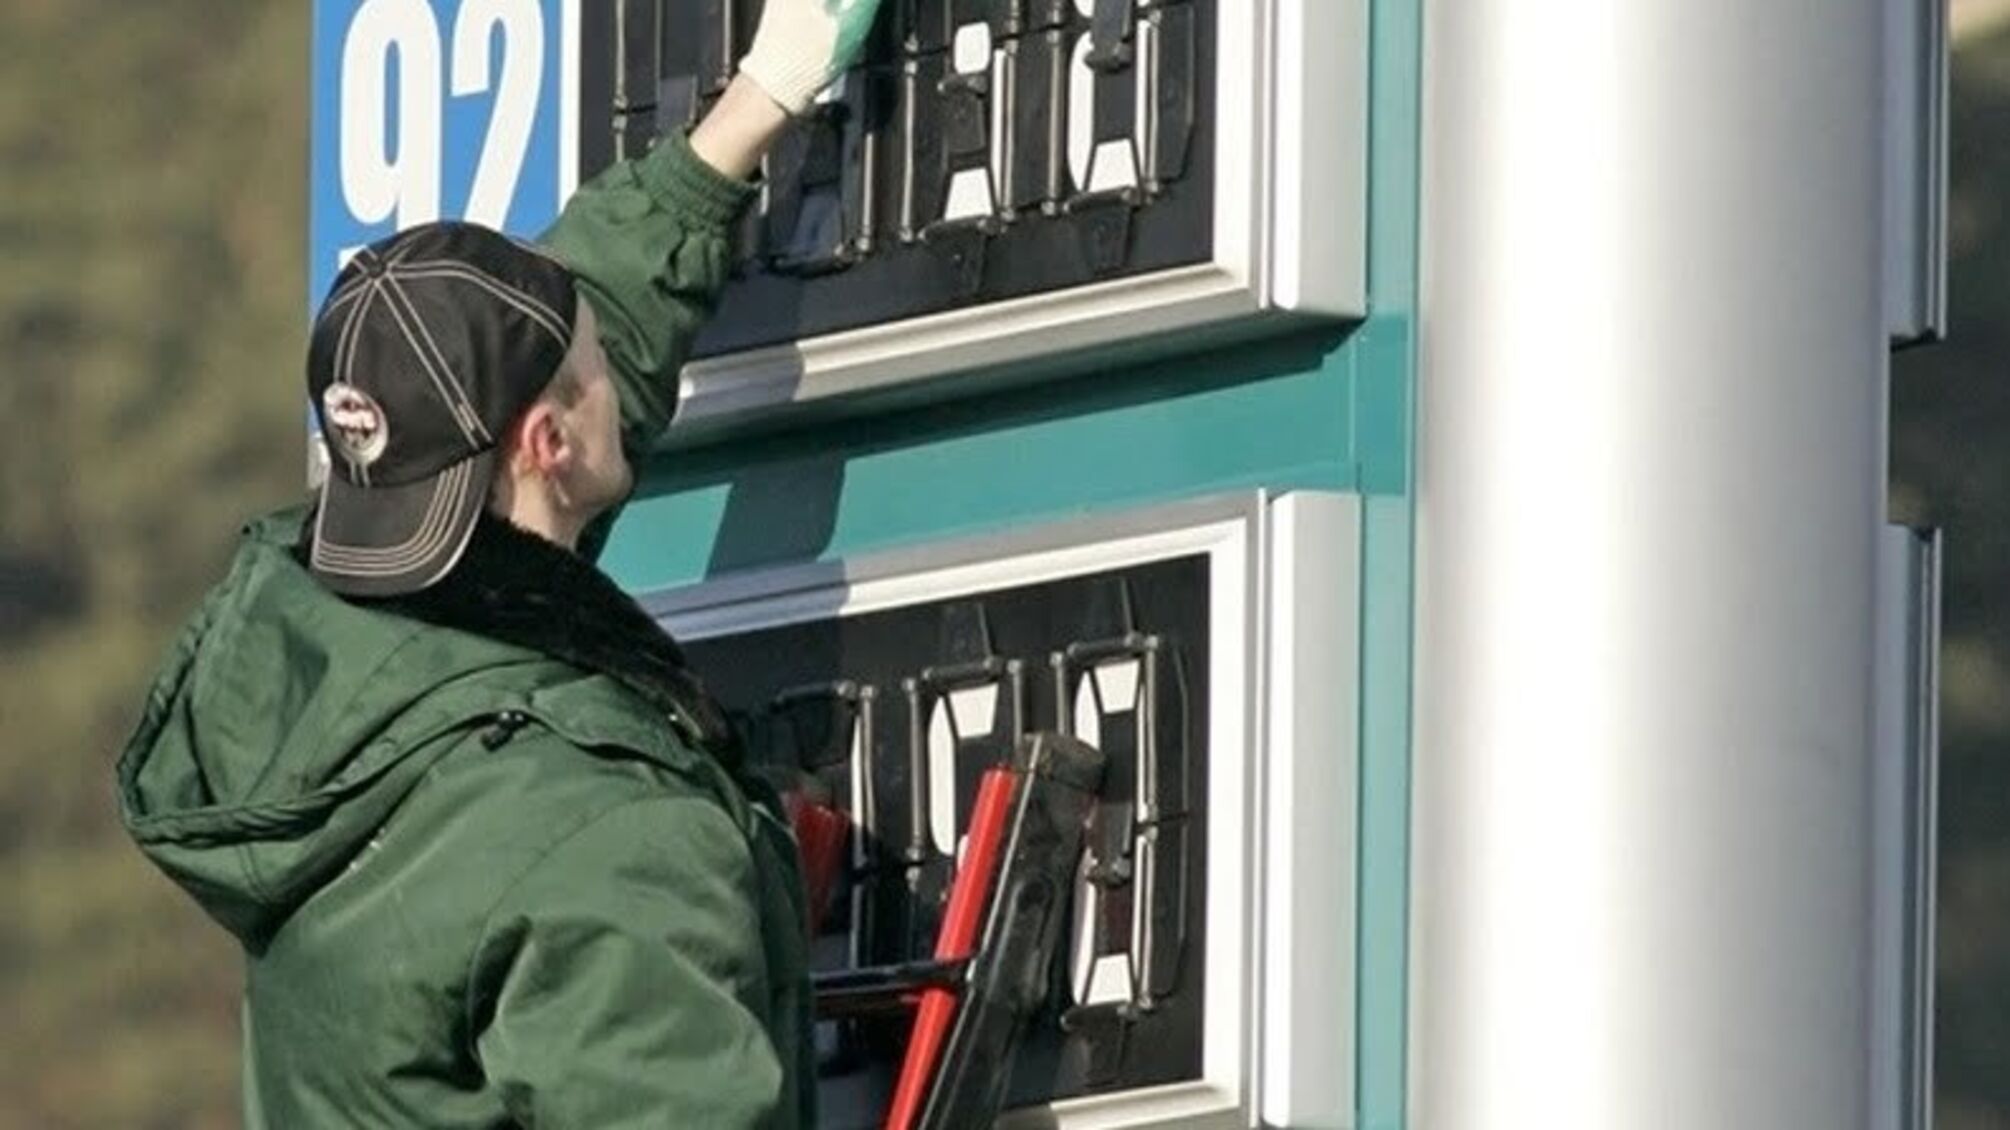 Цивільним не видавати: у бойовиків з 'Л/ДНР' закінчується дизельне паливо